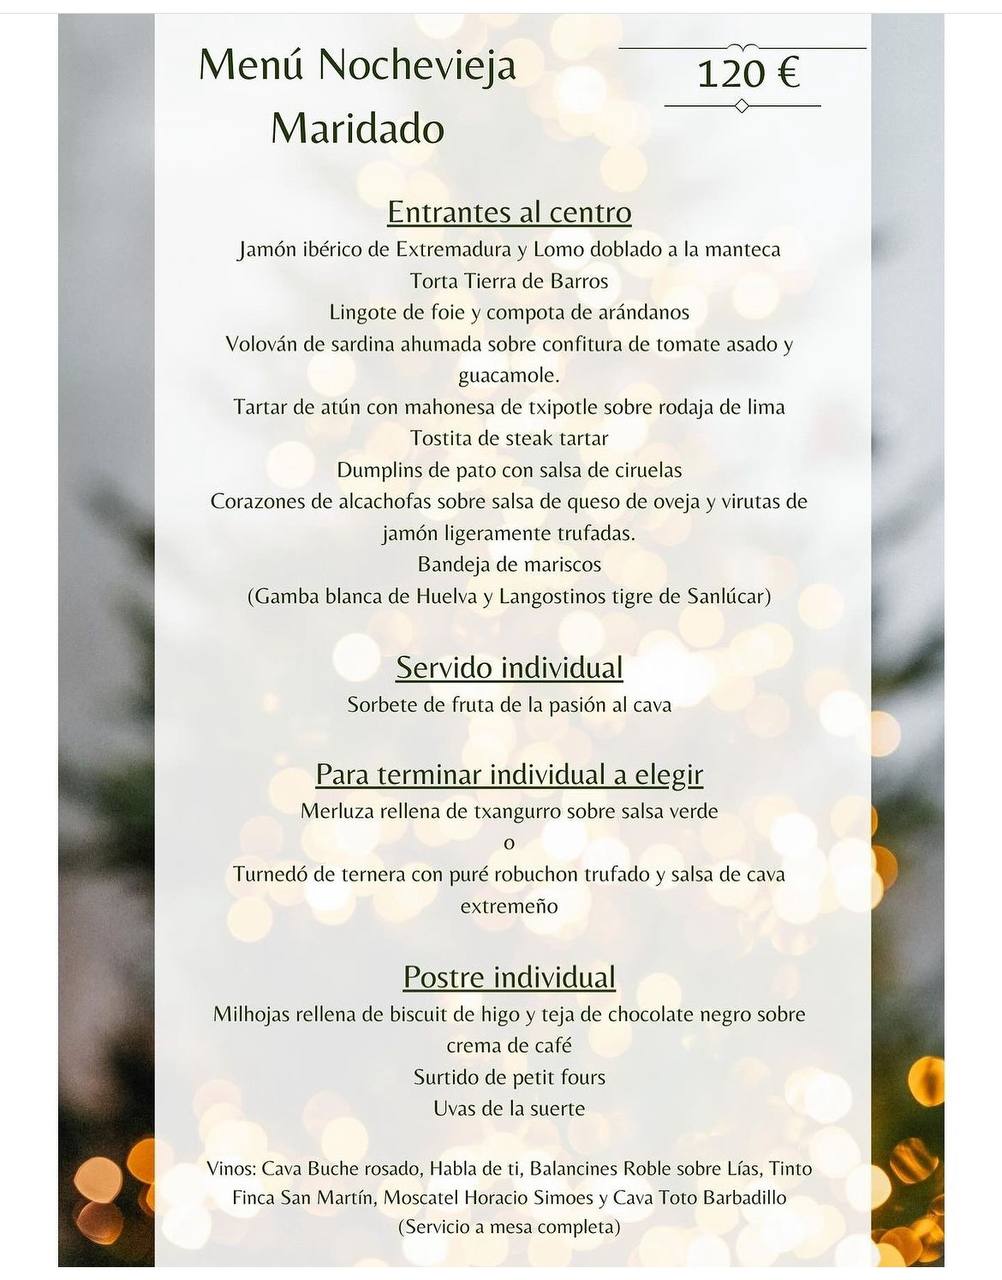 Restaurante Ábako-Menús De Navidad y Nochevieja